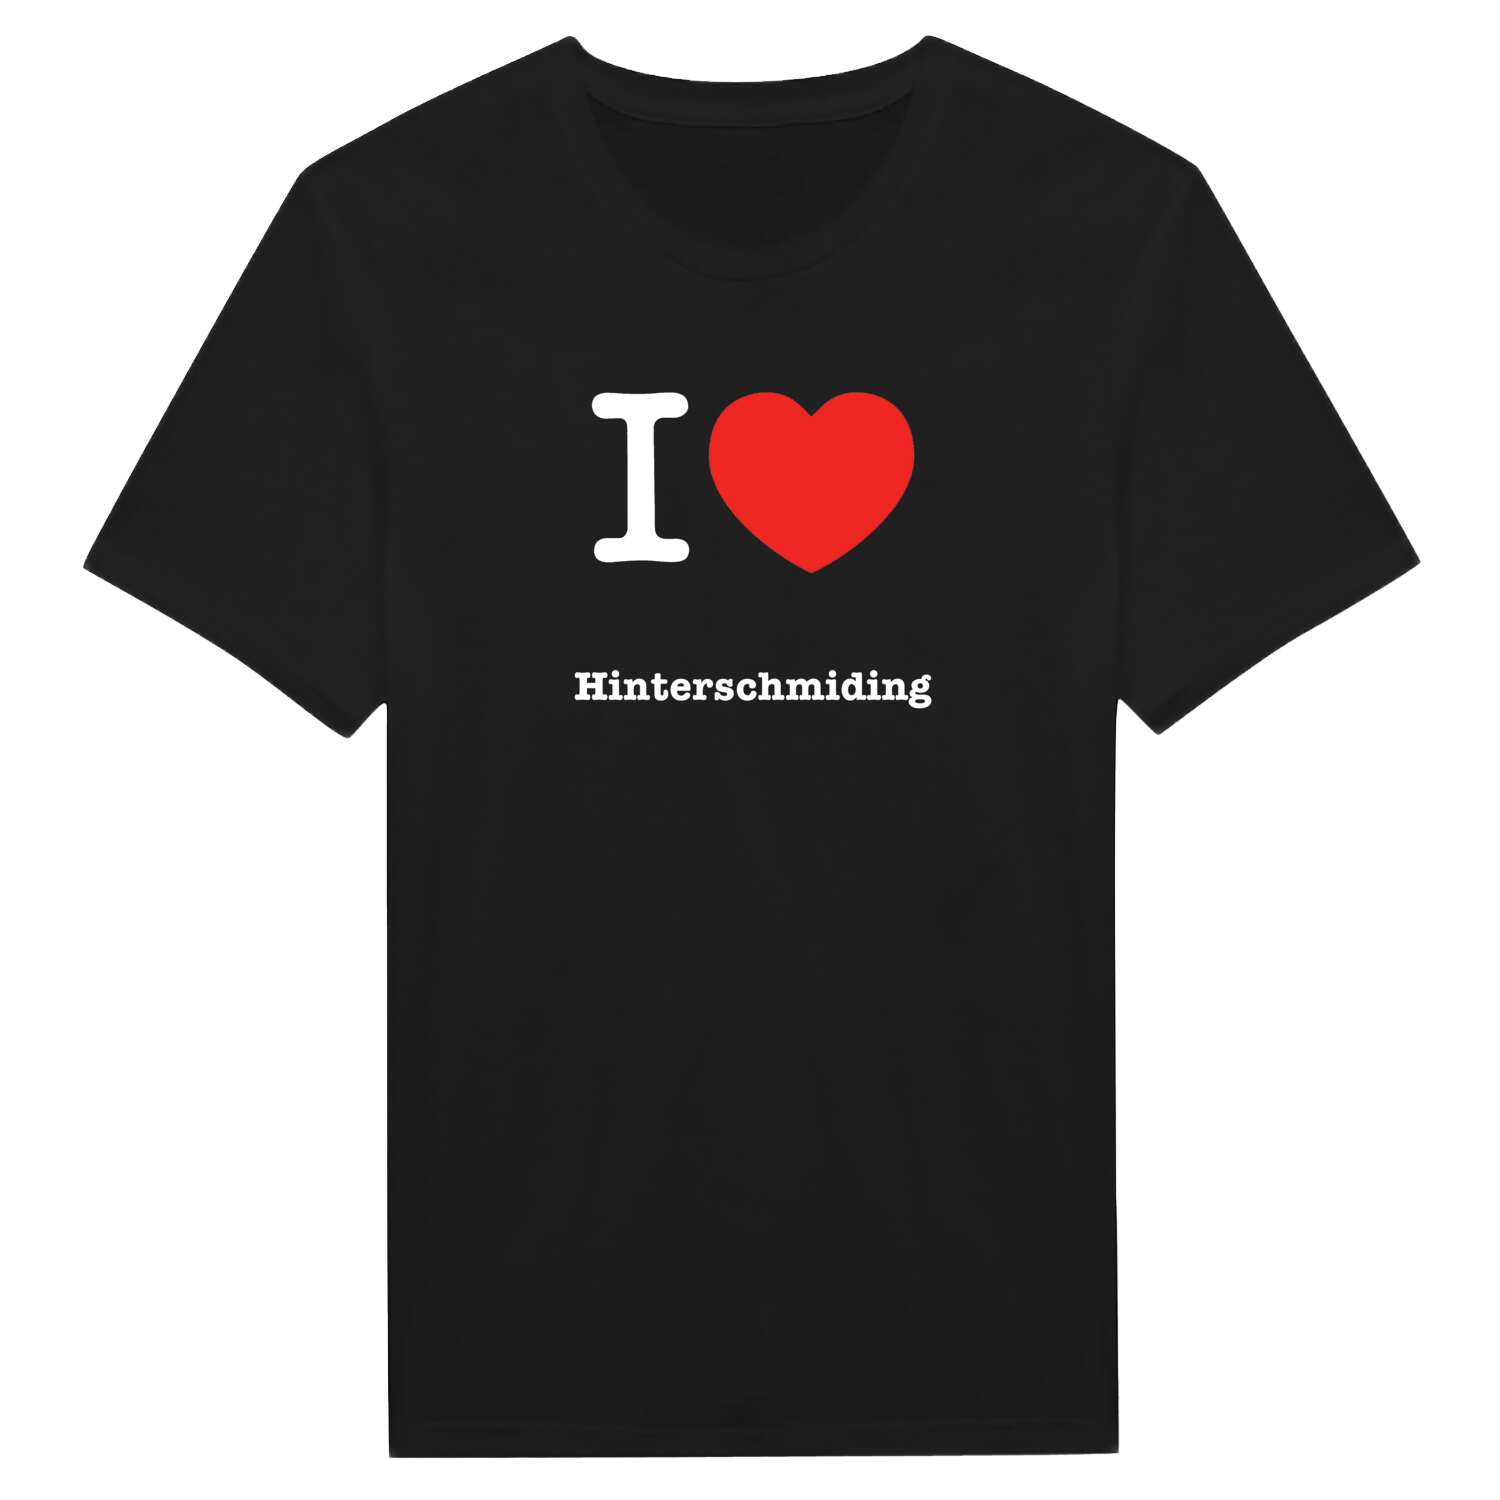 Hinterschmiding T-Shirt »I love«